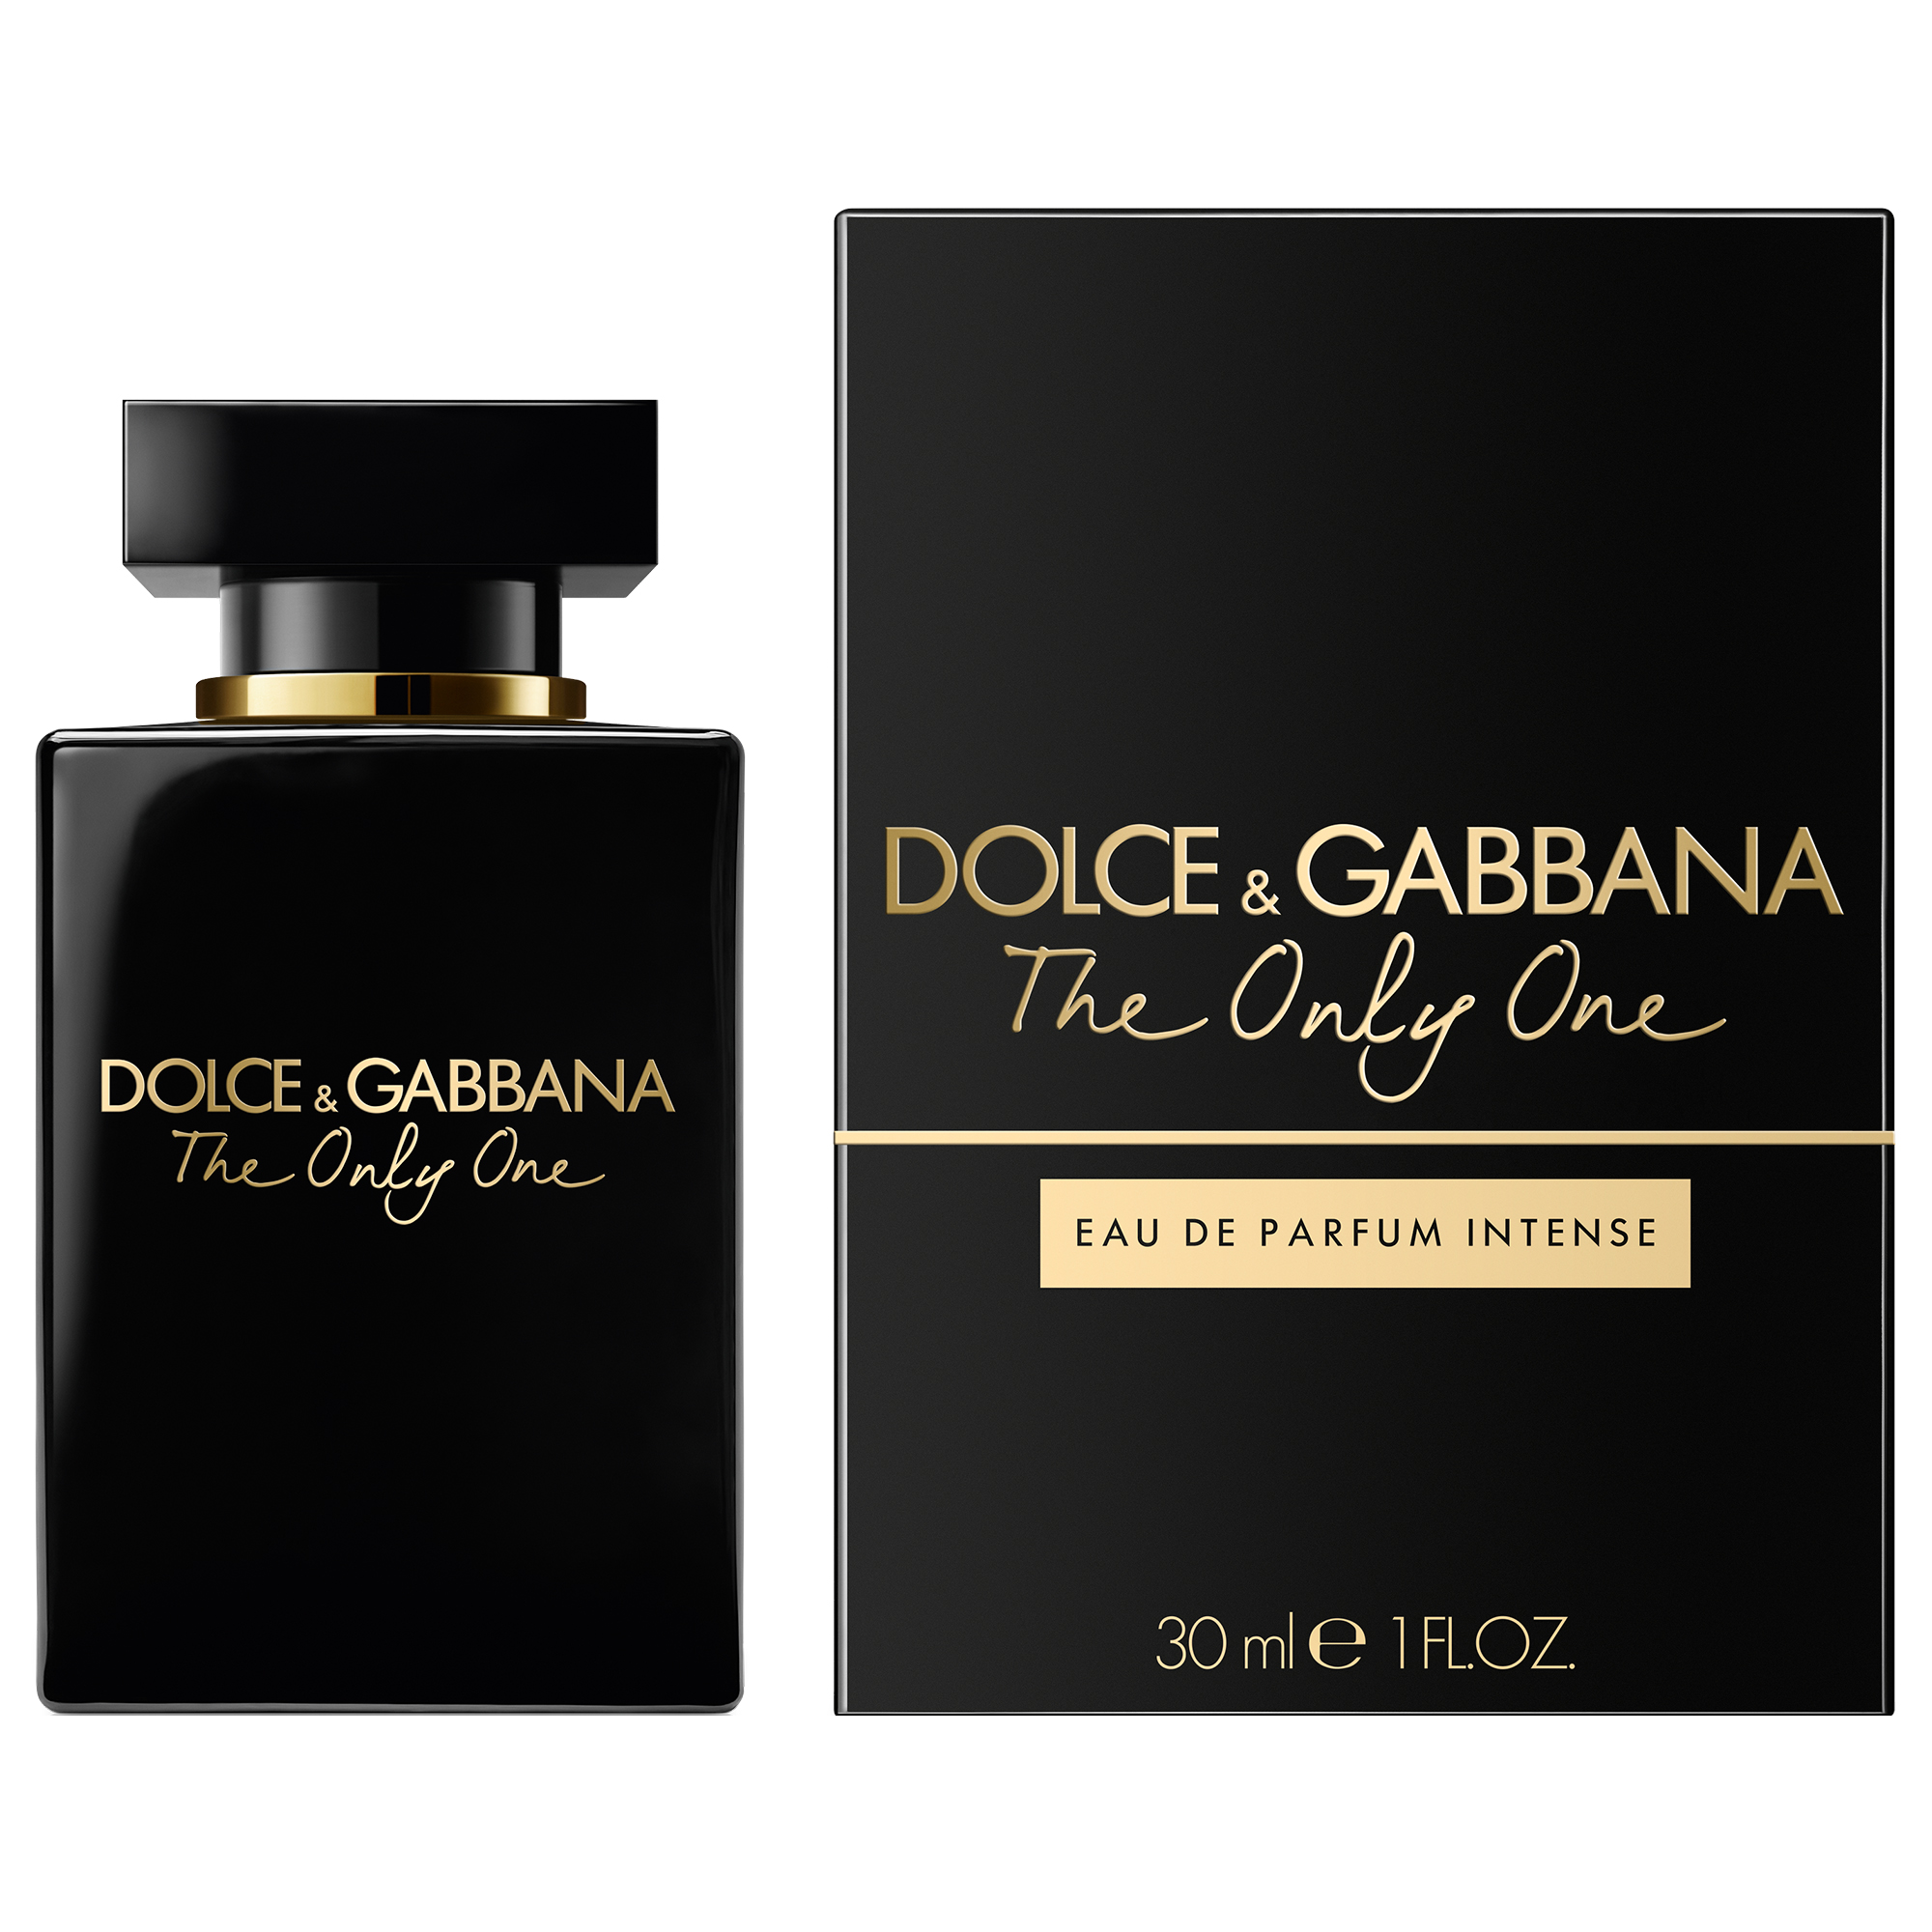 Парфюм дольче габбана в летуаль. Dolce & Gabbana the only one, EDP., 100 ml. Dolce&Gabbana the only one intense EDP (100 ml). Dolce & Gabbana the only one EDP 50 ml. Dolce Gabbana the only one 2 100 мл.